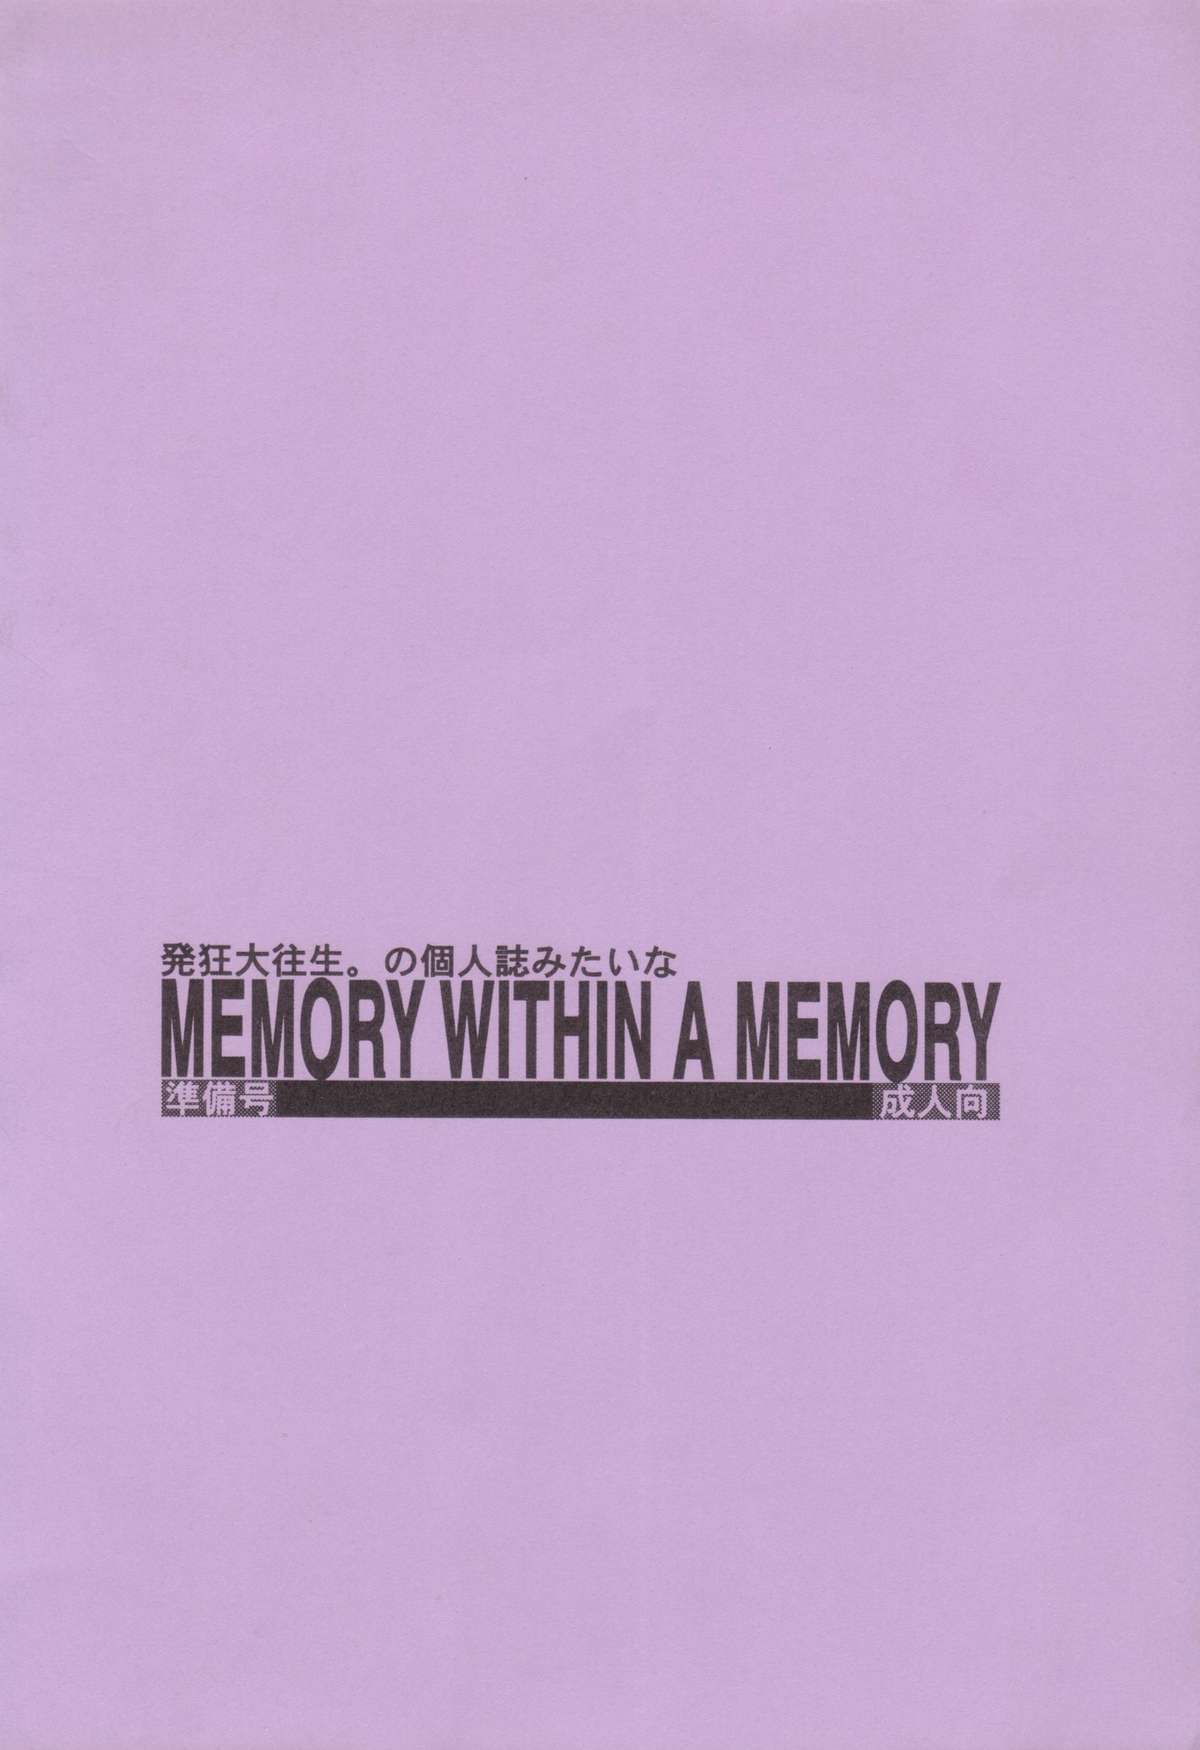 (Cレヴォ35) [ヒトリタワーブリッジ (発狂大往生)] MEMORY WITHIN A MEMORY 準備号 (THE ビッグオー)